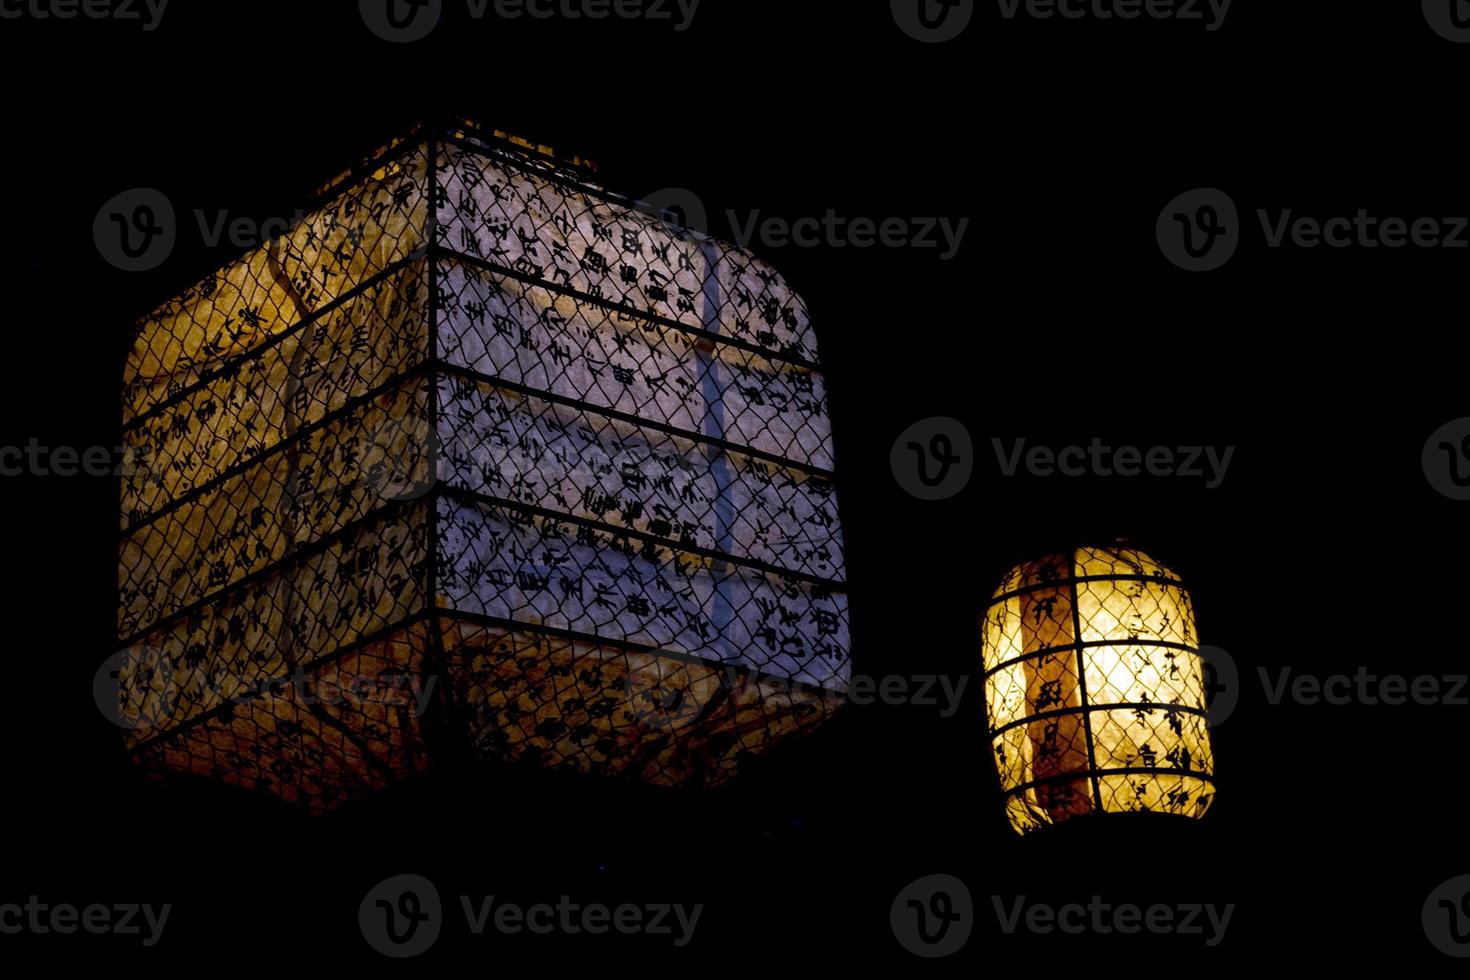 giapponese lanterna raggiante nel il nero sfondo foto